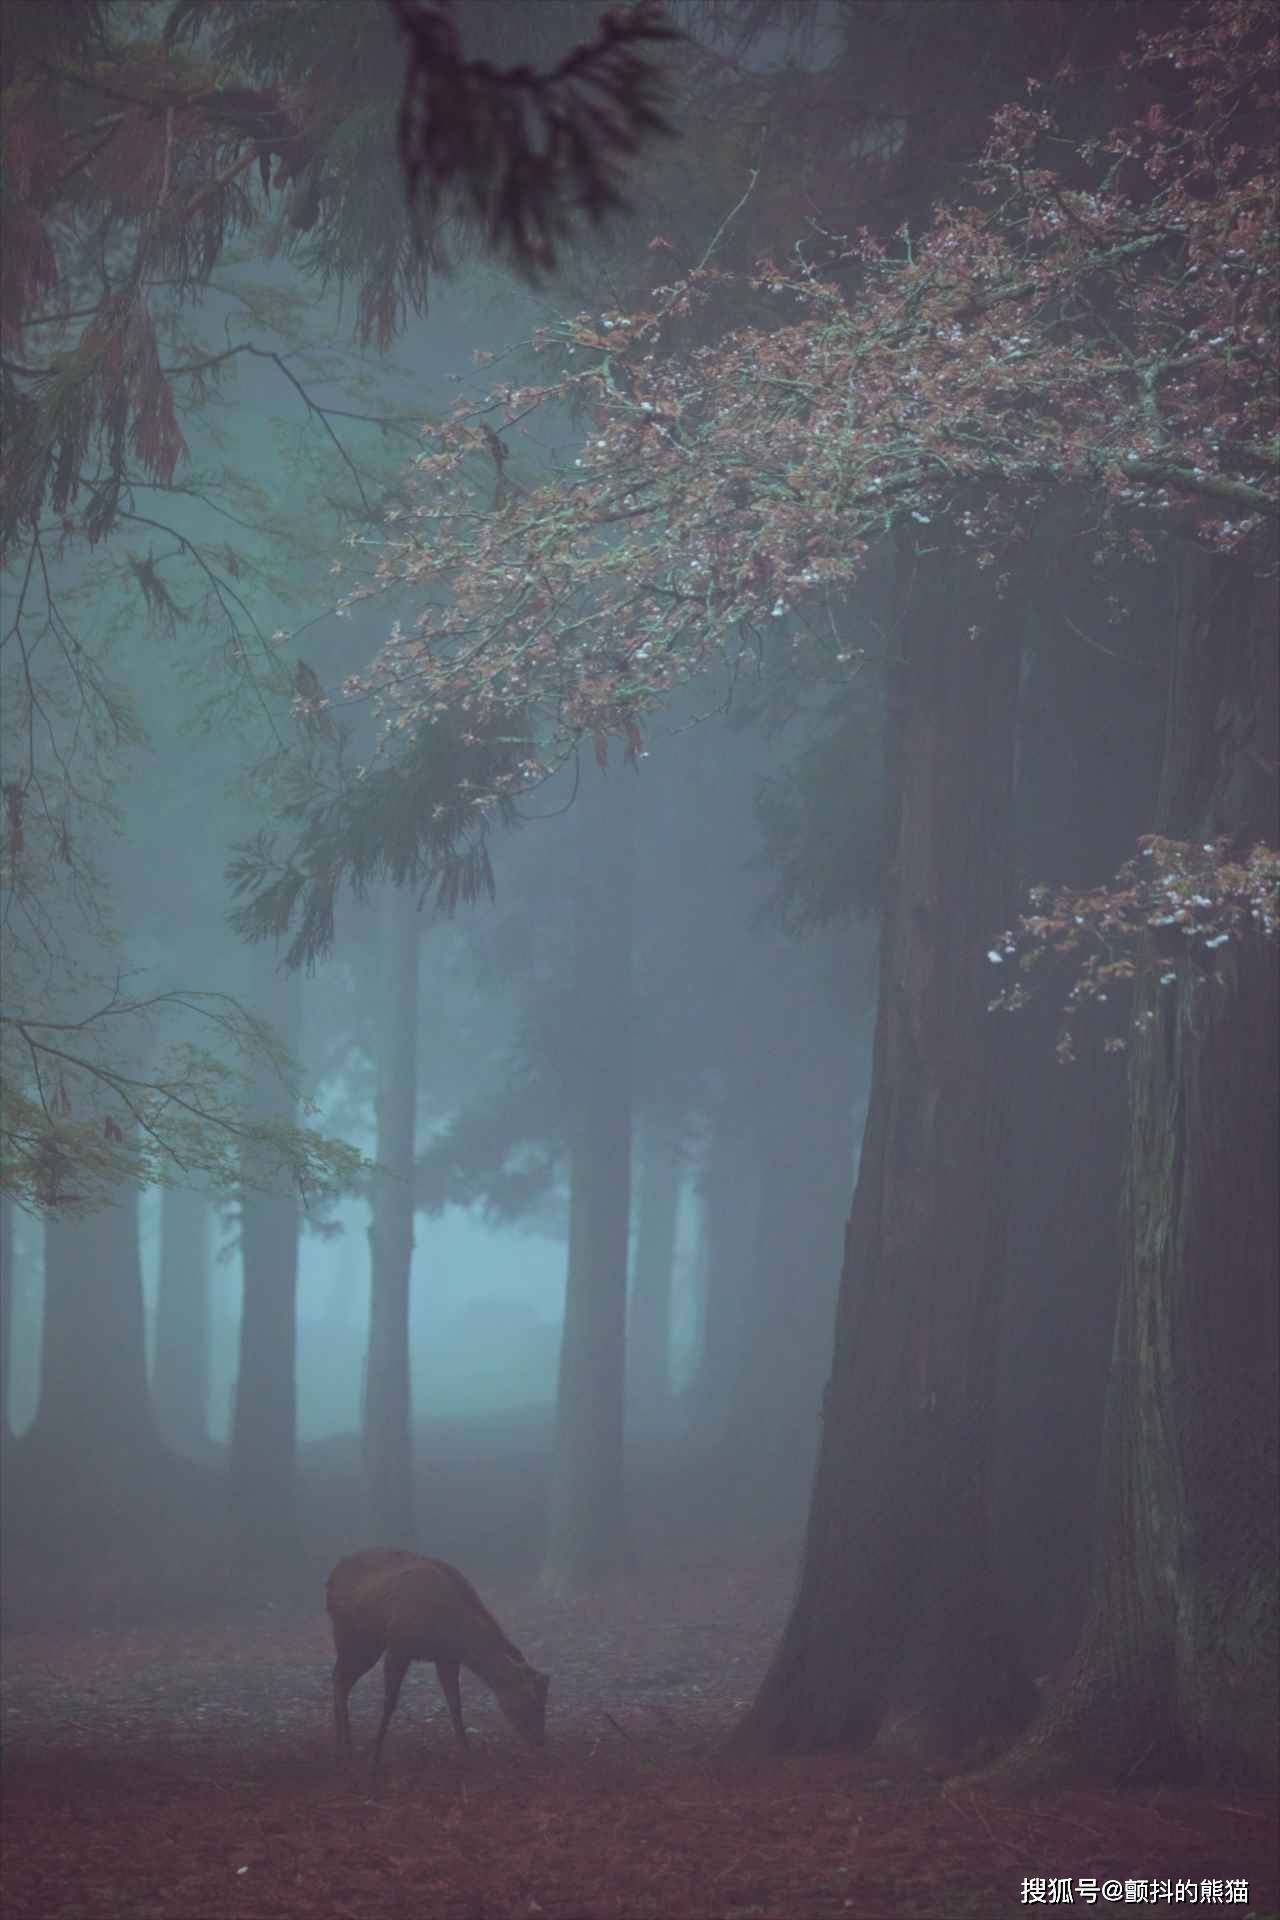 樱花盛开的时候正好发生了浓雾！简直就像“童话世界”一样的景象